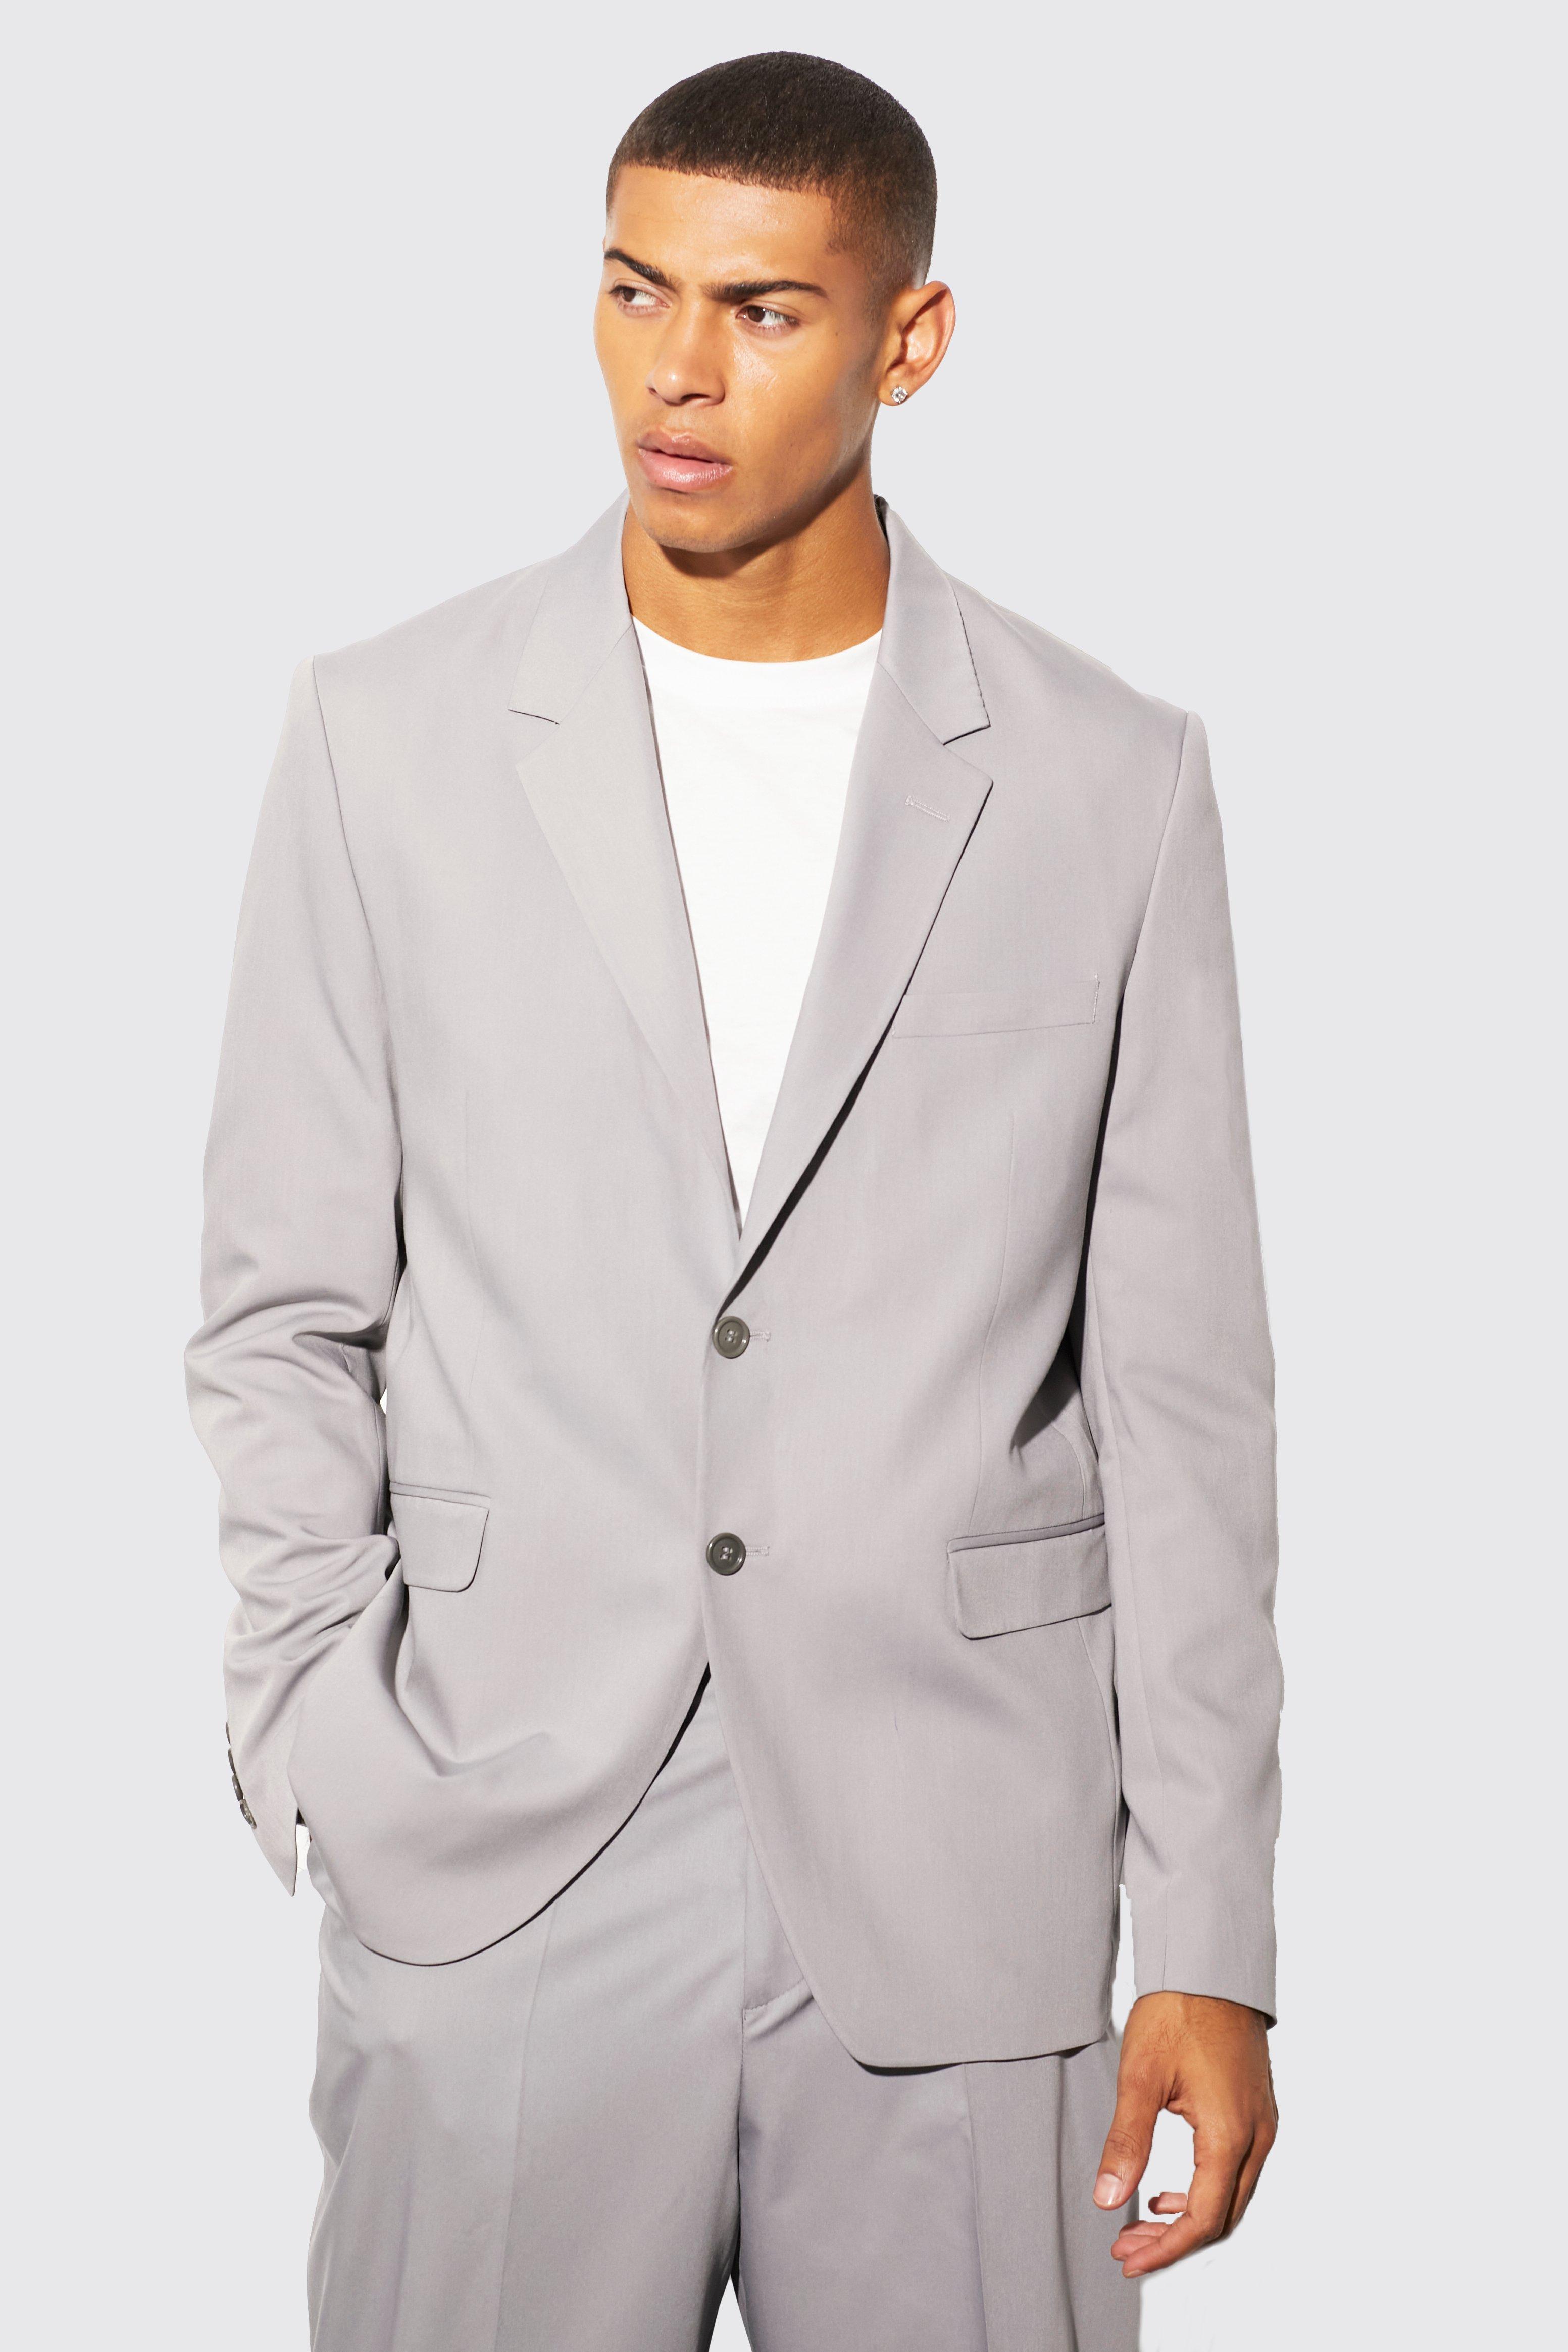 blazer droit ample homme - gris - 36, gris